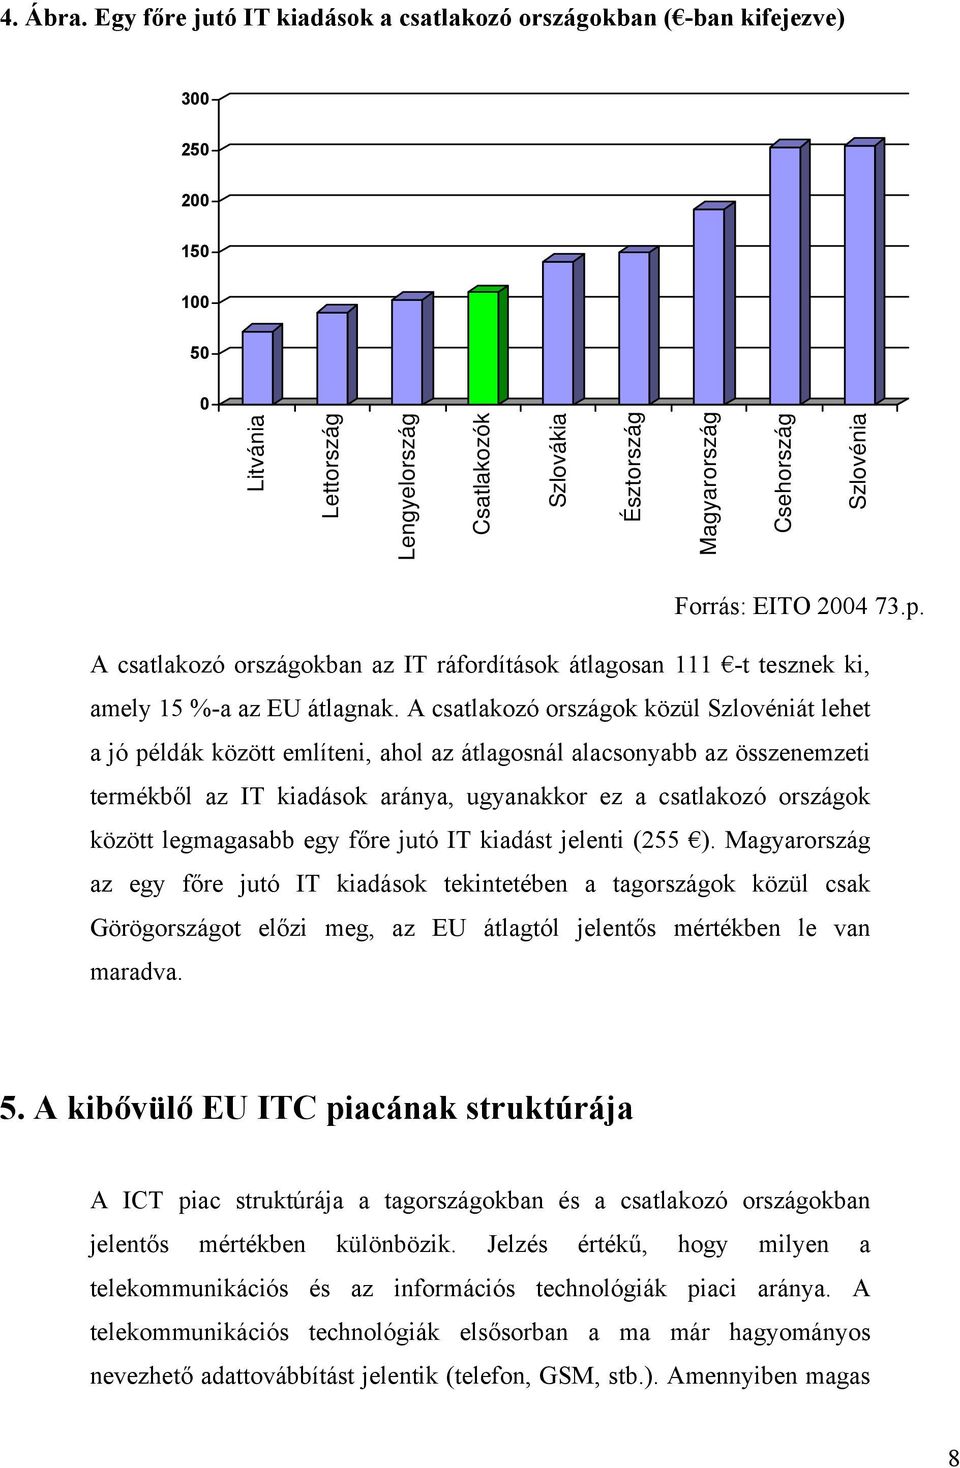 Forrás: EITO 2004 73.p. A csatlakozó országokban az IT ráfordítások átlagosan 111 -t tesznek ki, amely 15 %-a az EU átlagnak.